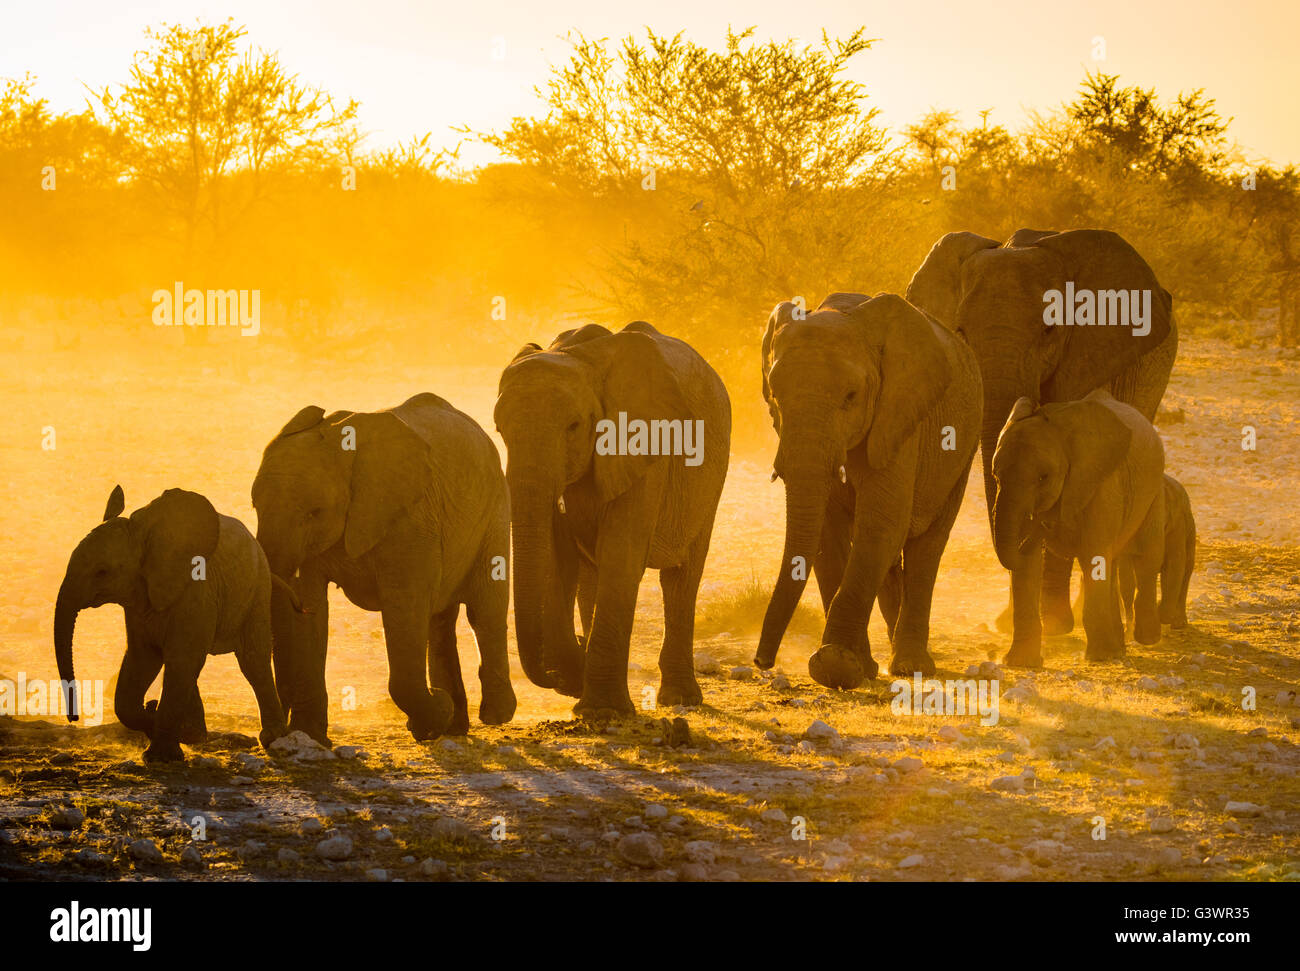 African elephants in Etosha National Park, Namibia. Stock Photo